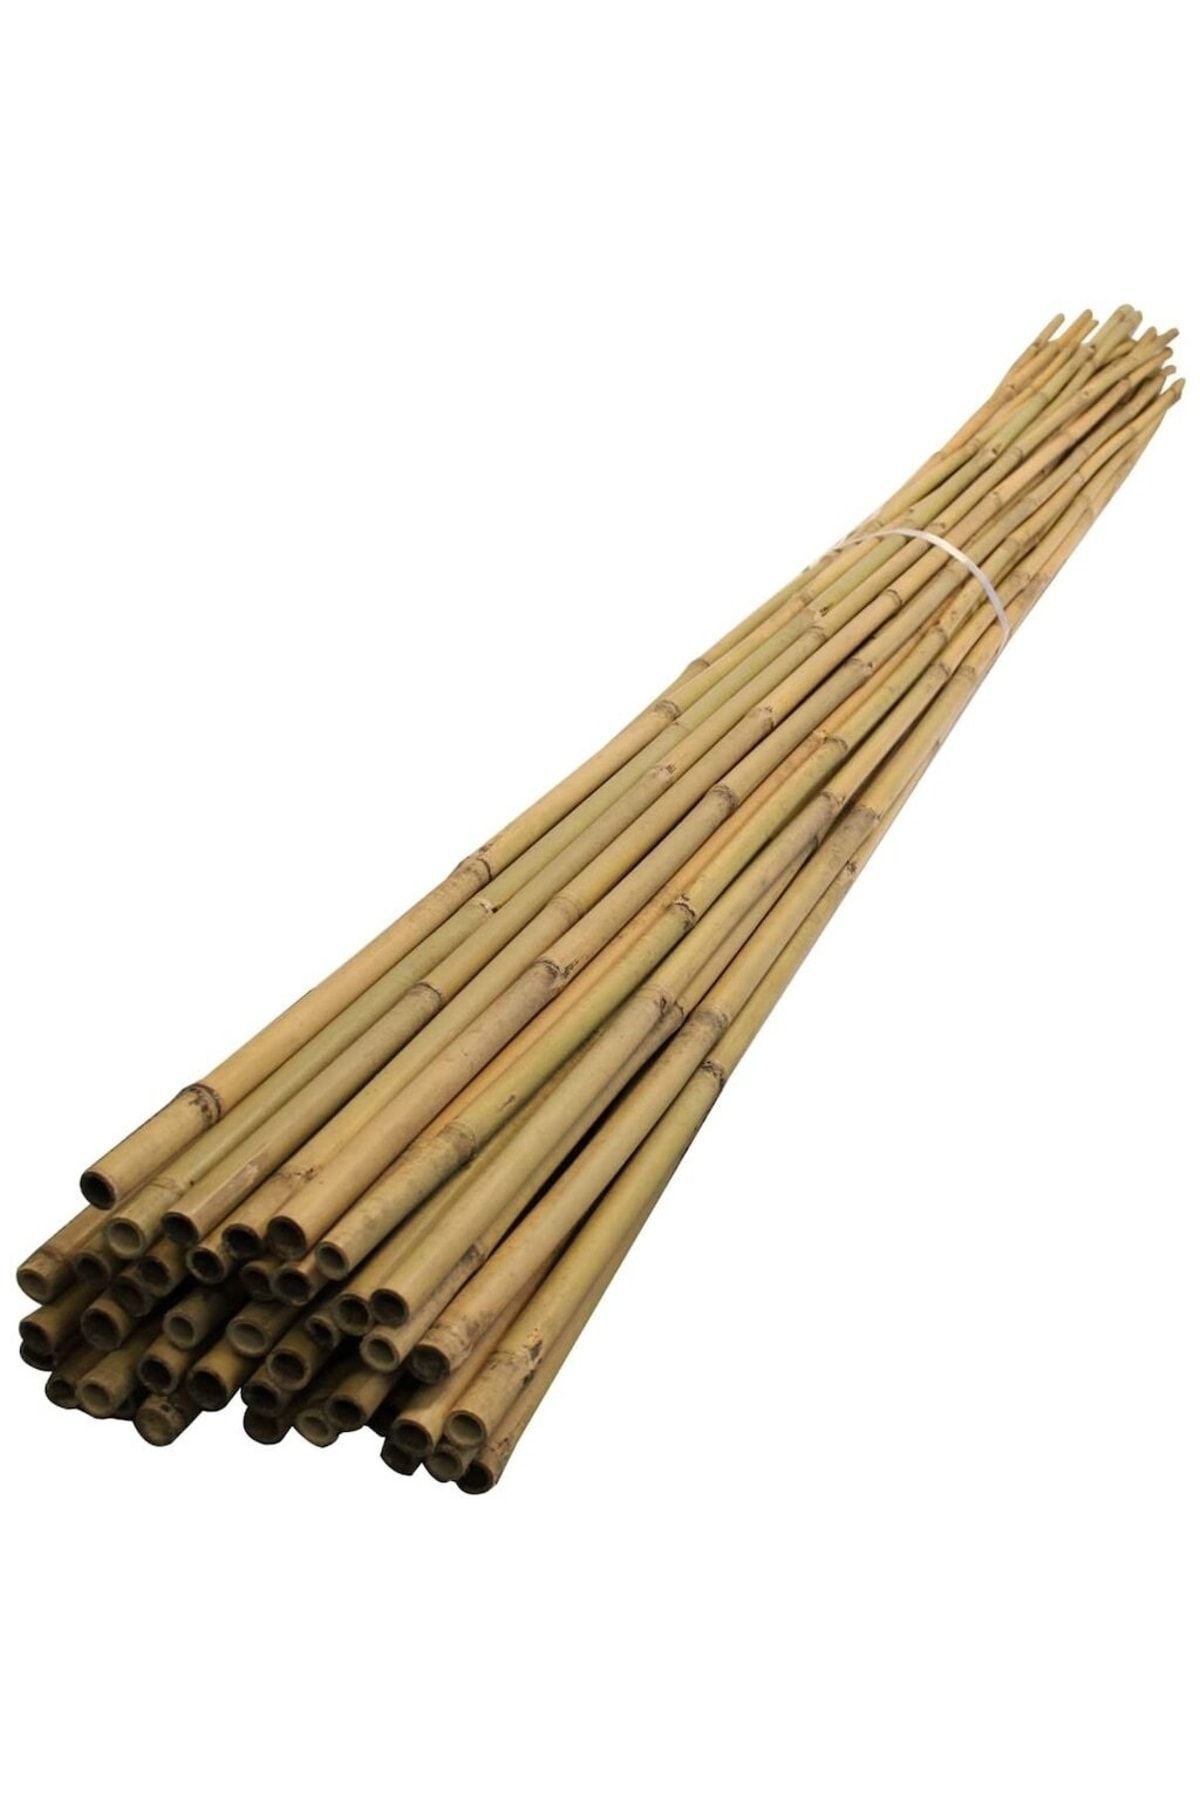 DORUK DEKOR 100 Cm Dekoratif Bambu Çubuk 10 Ad.